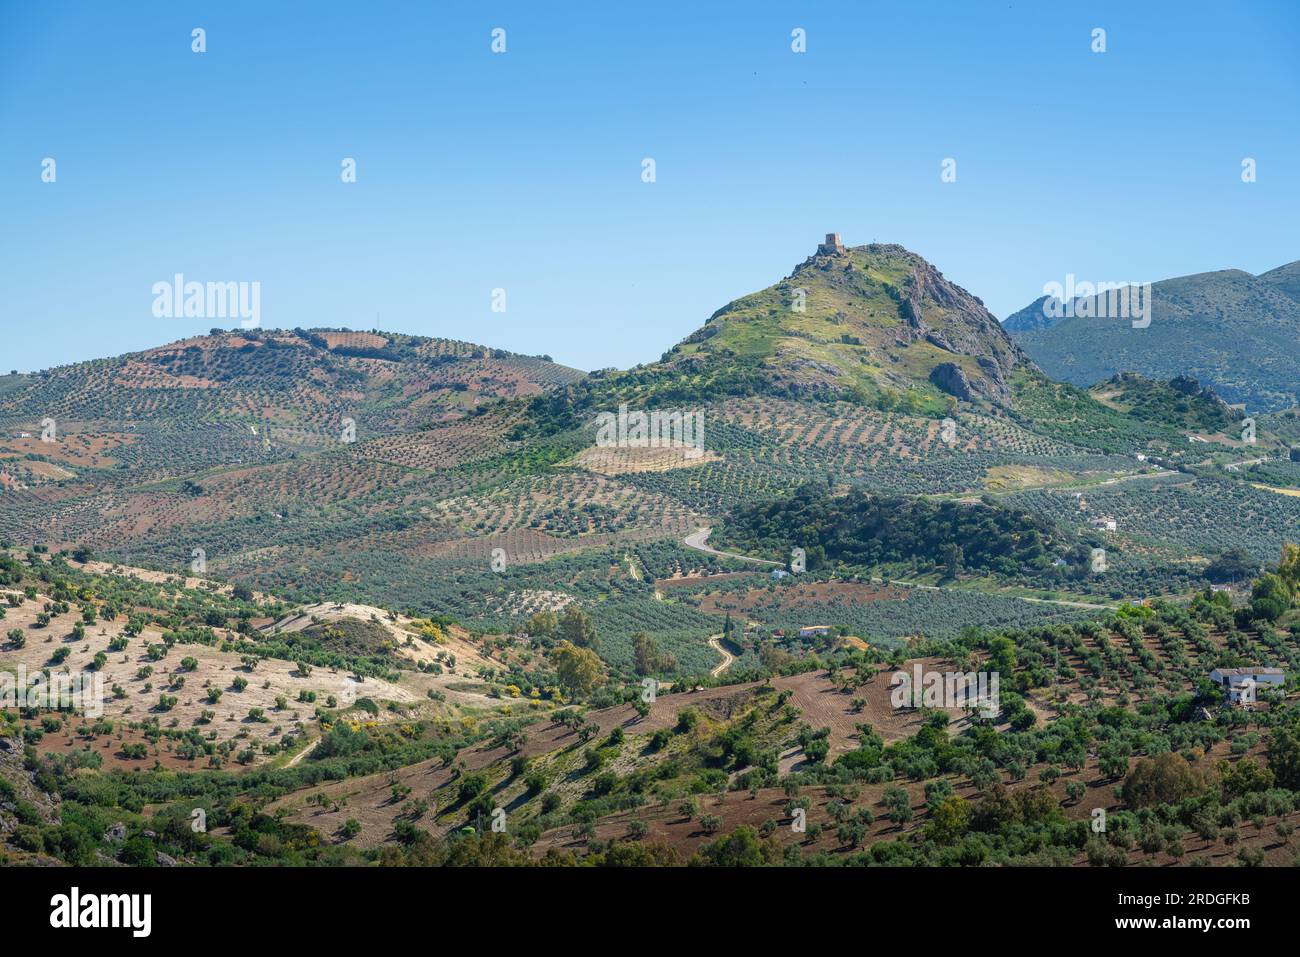 Montagnes vue depuis Olvera avec le château de fer de Pruna - Olvera, Andalousie, Espagne Banque D'Images